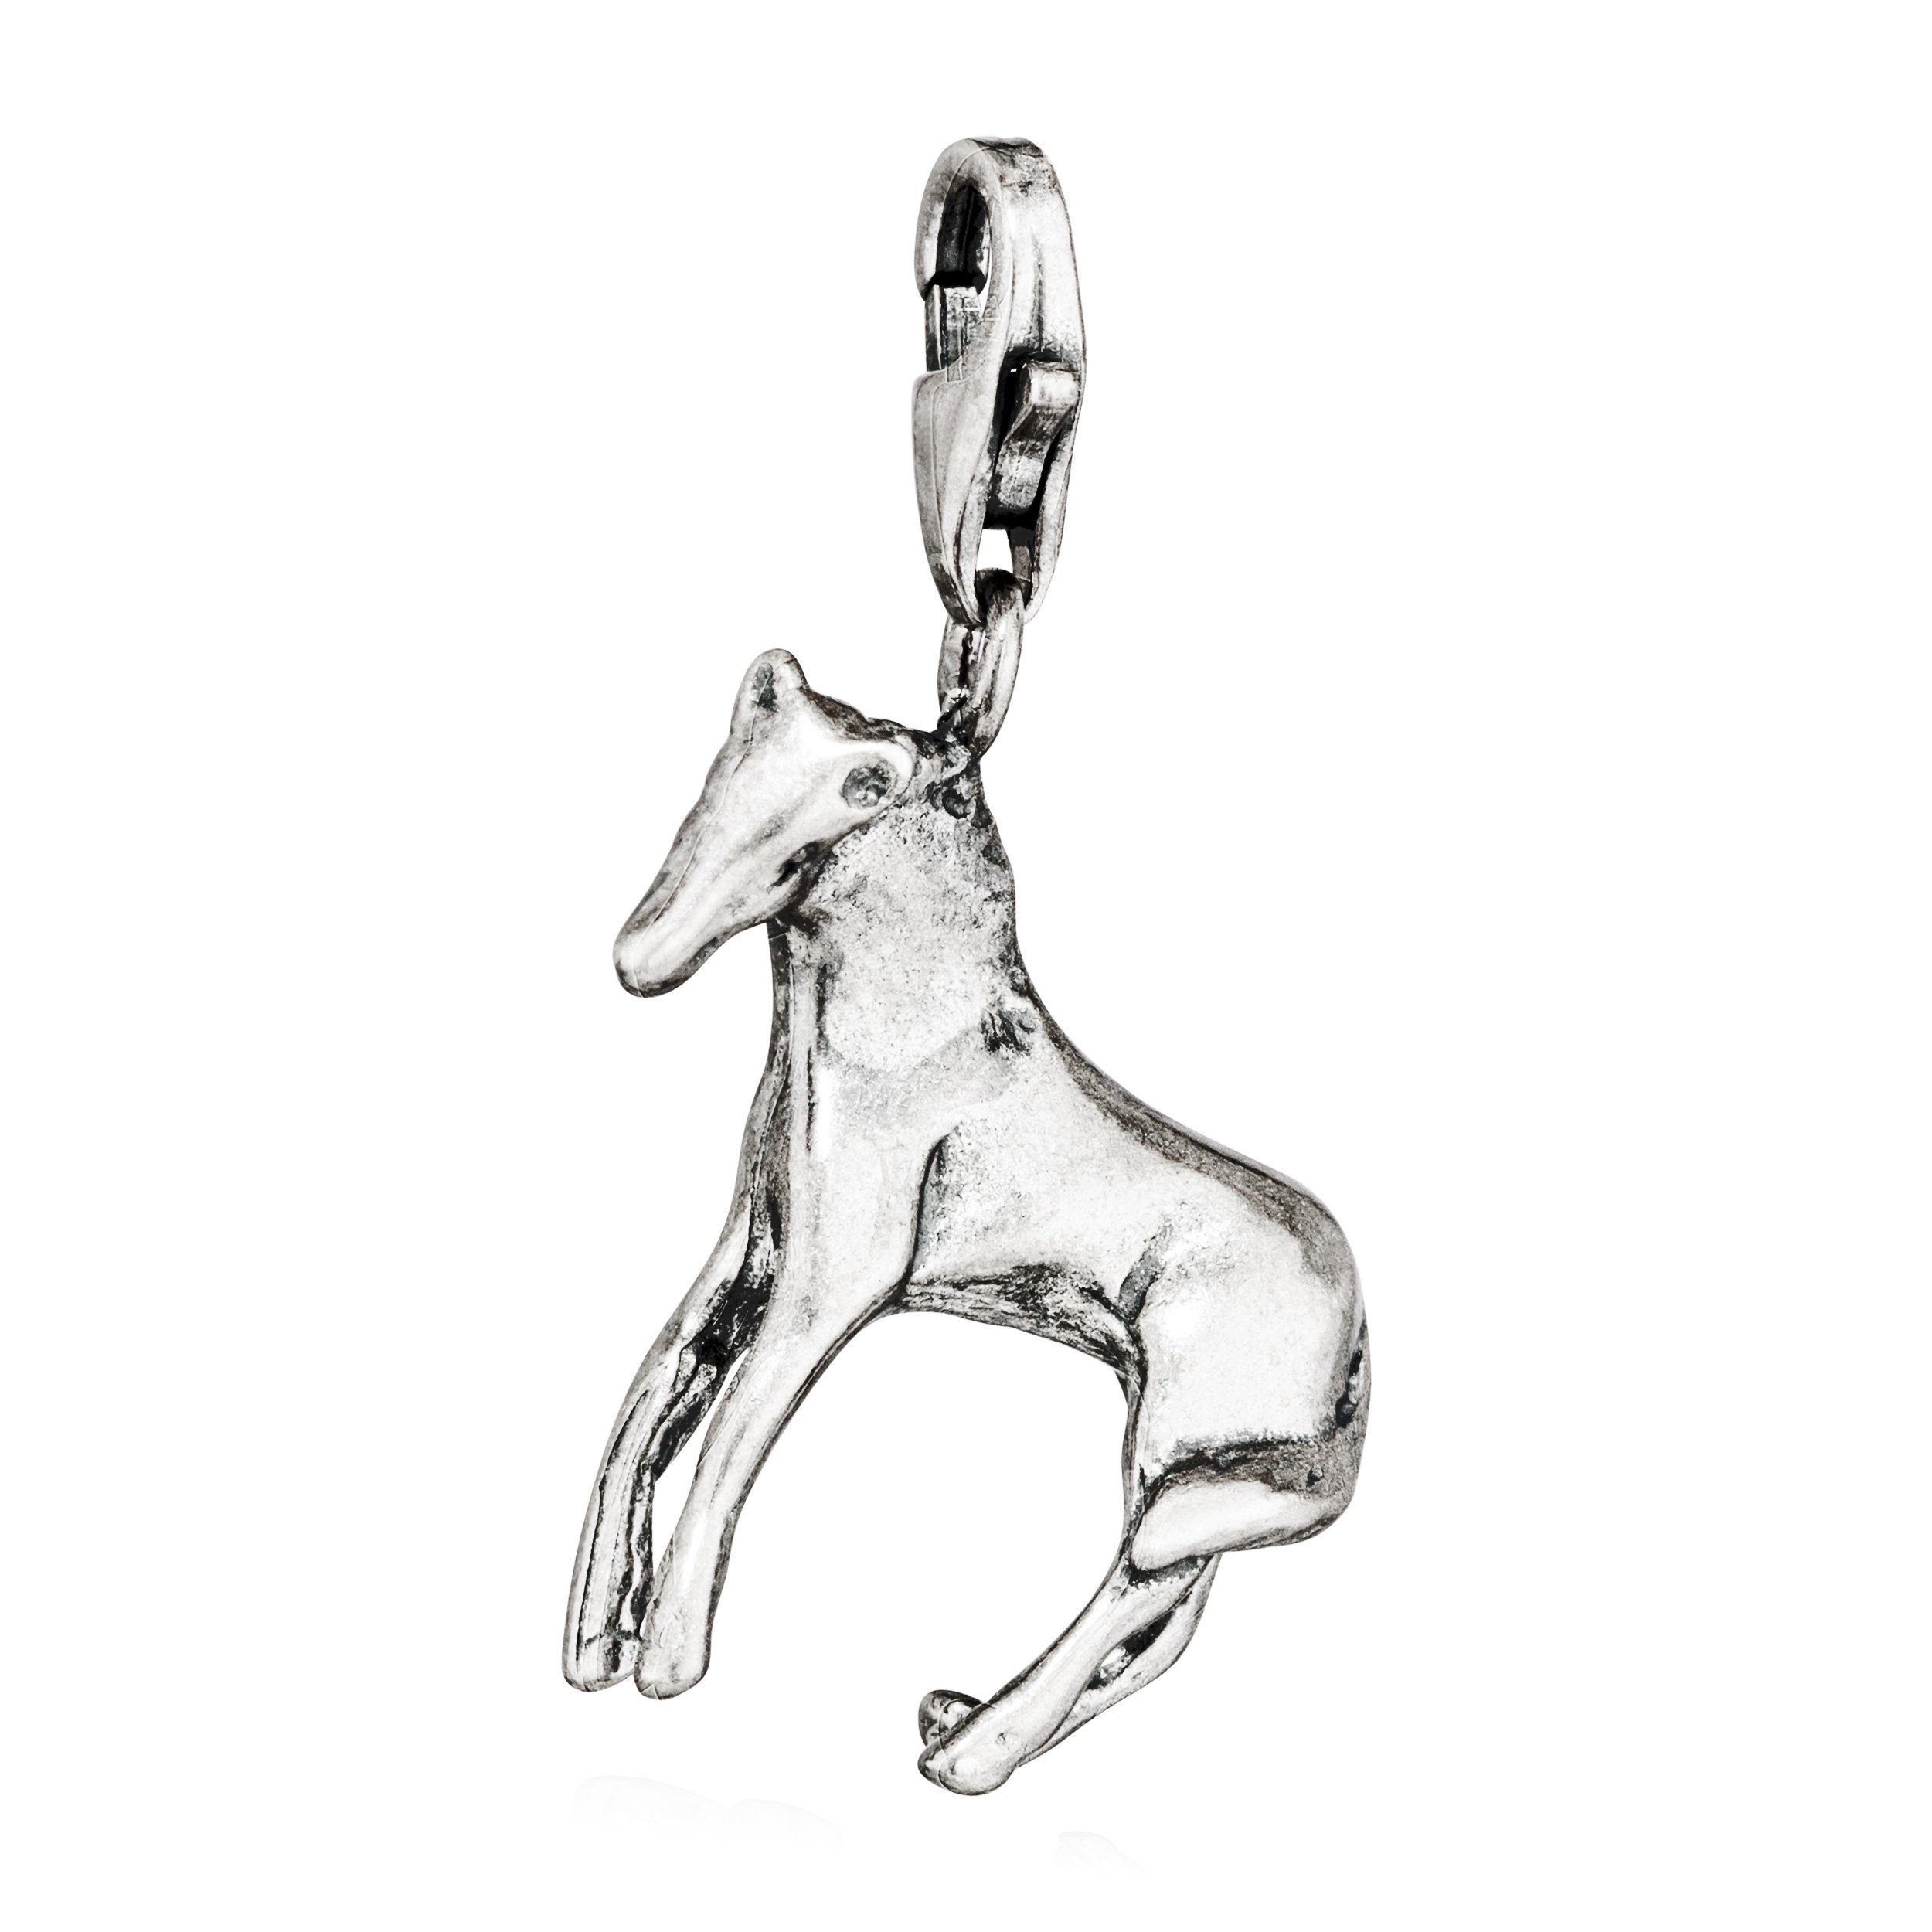 NKlaus Kettenanhänger Charm-Anhänger Pferd 925 Silber antik 20x18mm Silberanhänger Amulett T | Kettenanhänger